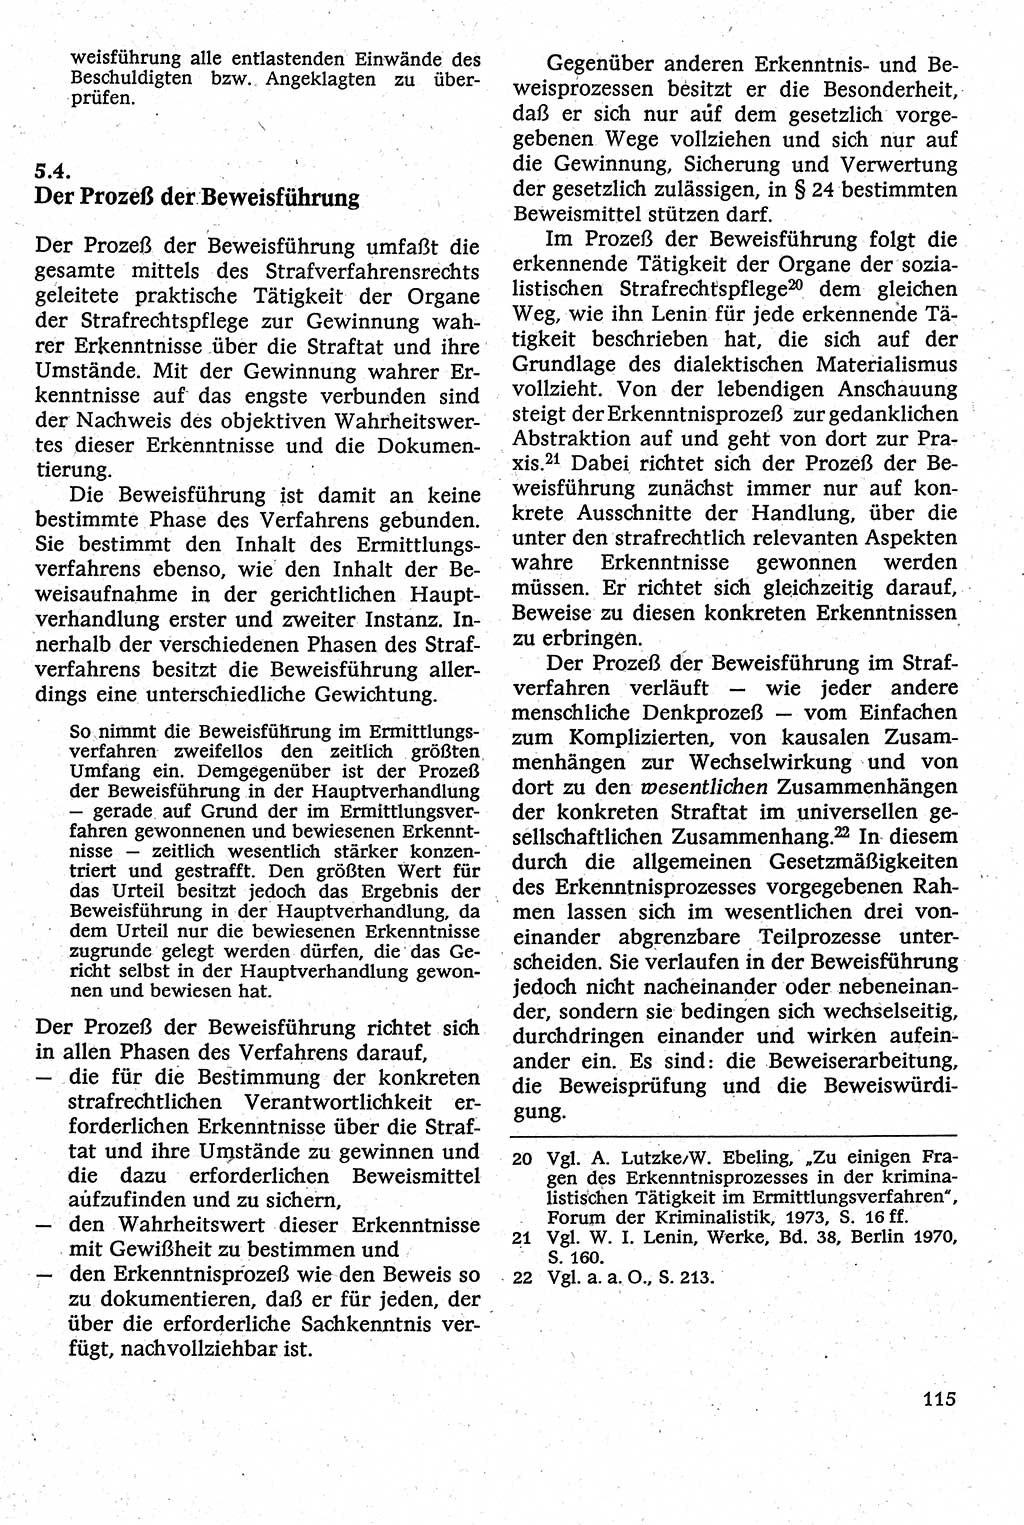 Strafverfahrensrecht [Deutsche Demokratische Republik (DDR)], Lehrbuch 1982, Seite 115 (Strafverf.-R. DDR Lb. 1982, S. 115)